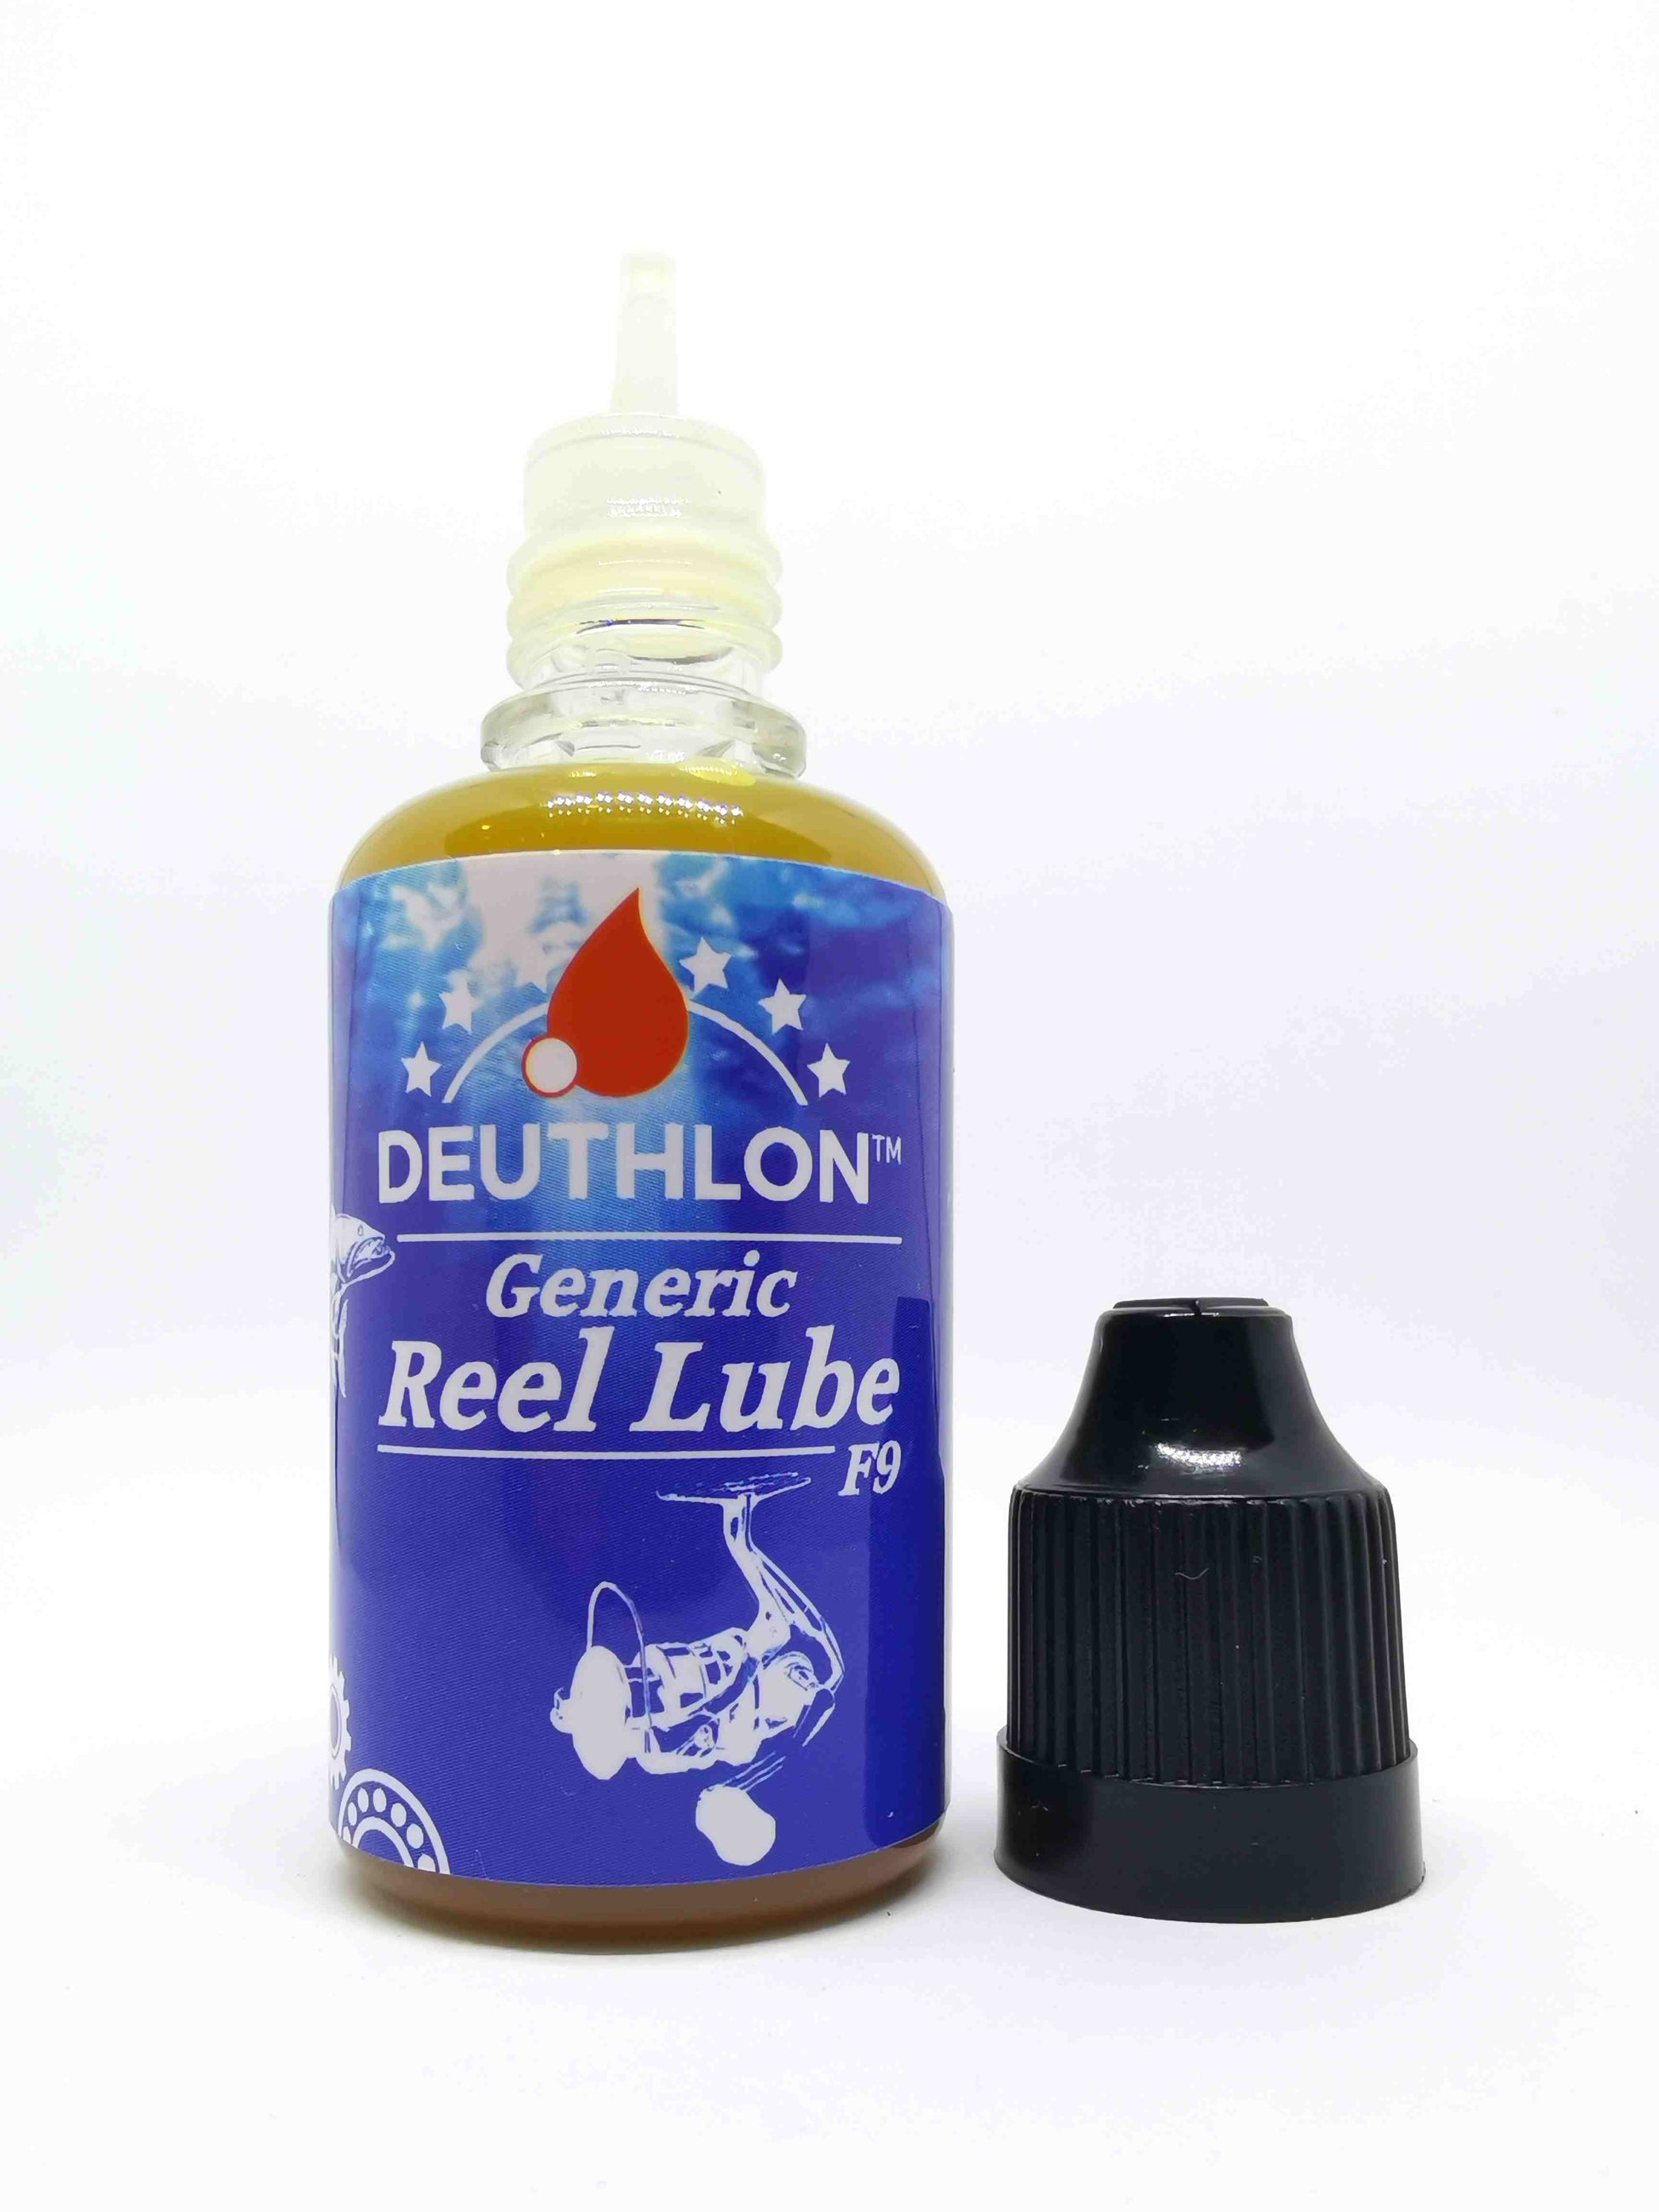 Generic Reel Lube (F9) | Generic reel lube